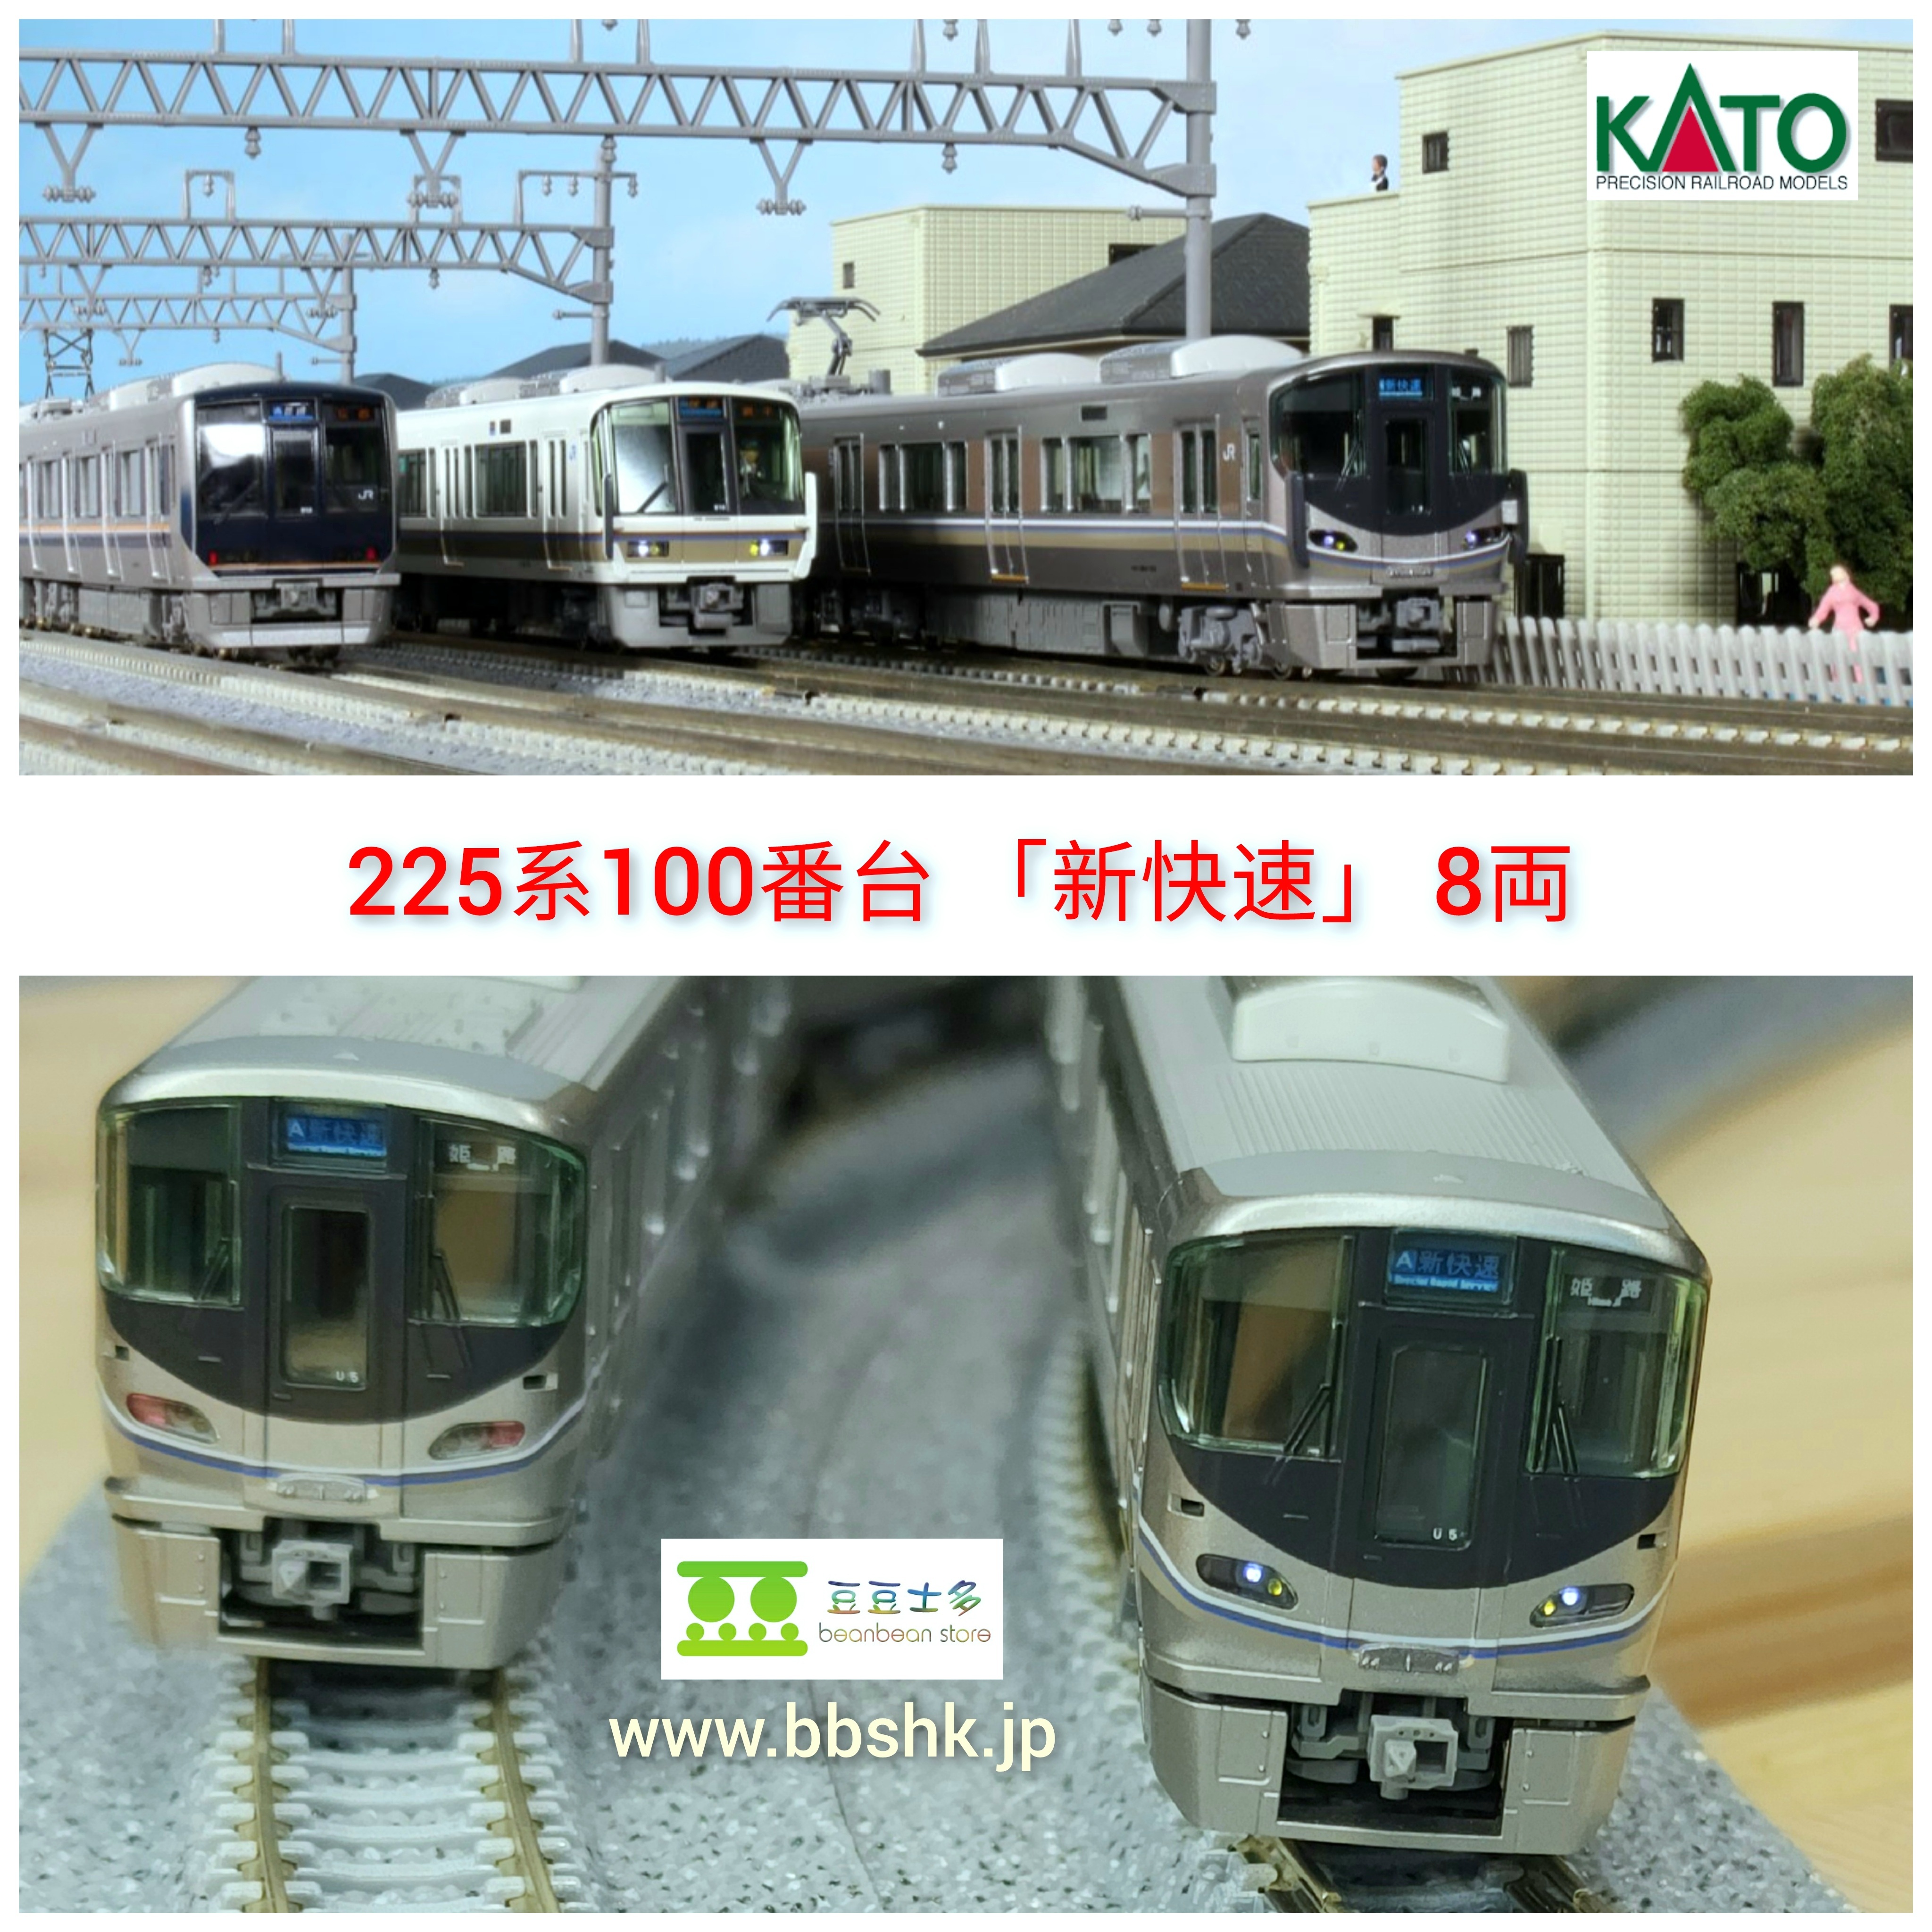 入手困難 KATO 10-1439 225系100番台 新快速 8両セット カトー